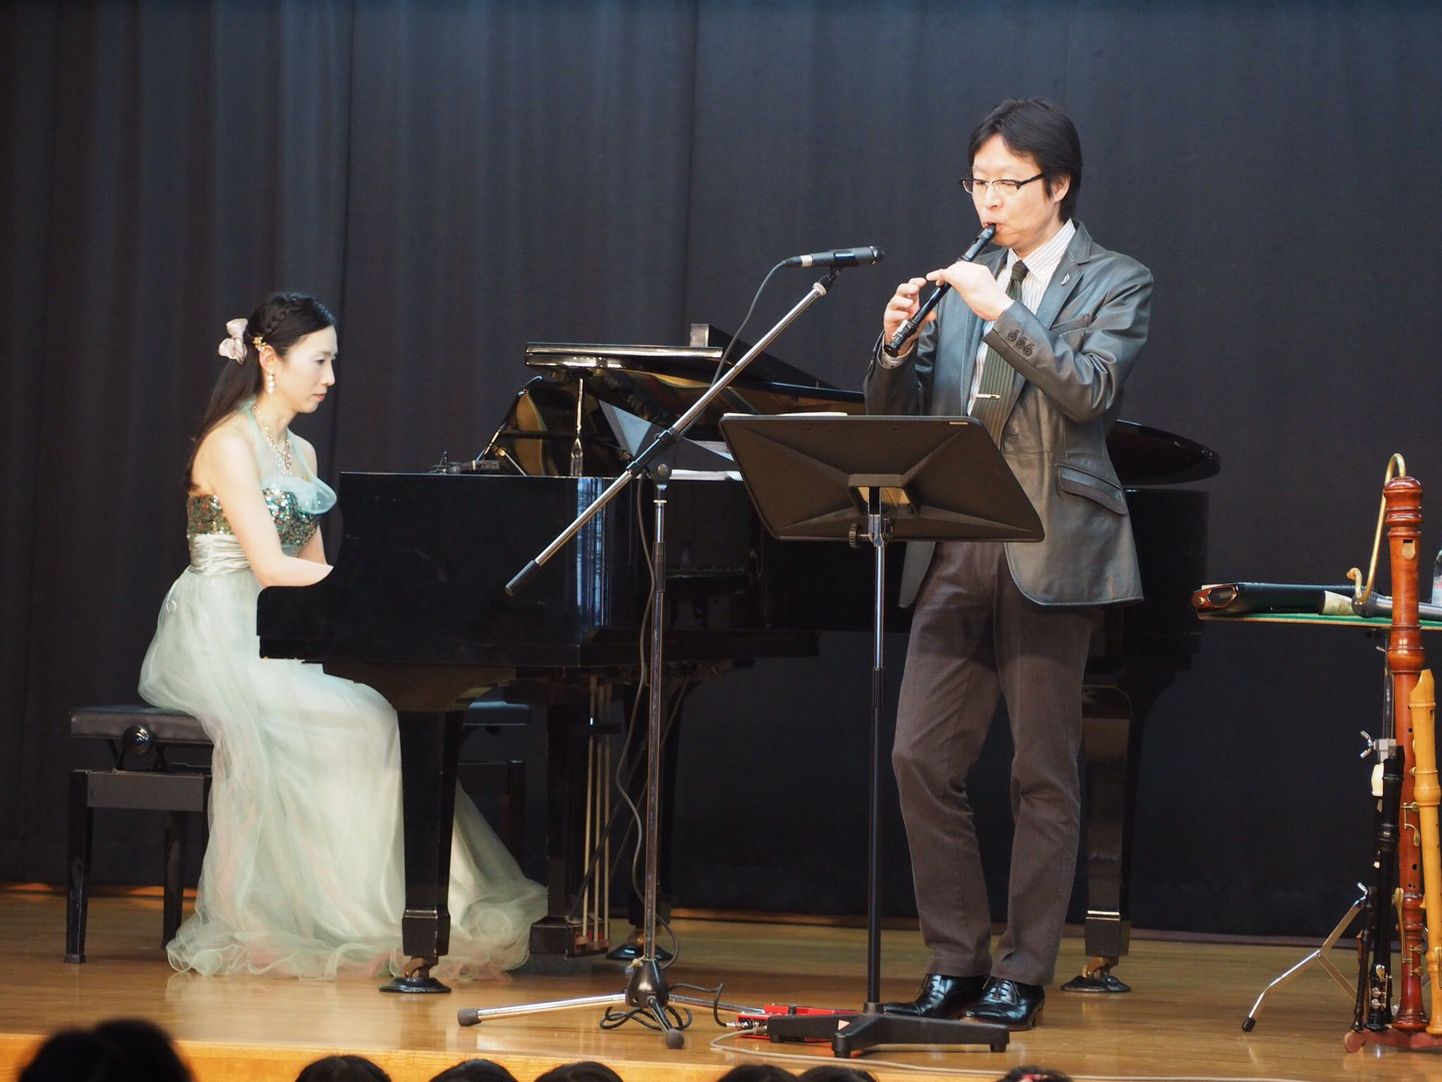 Jaapani duo pianist Maki Ono ja flötist Yasunori Hayazaki